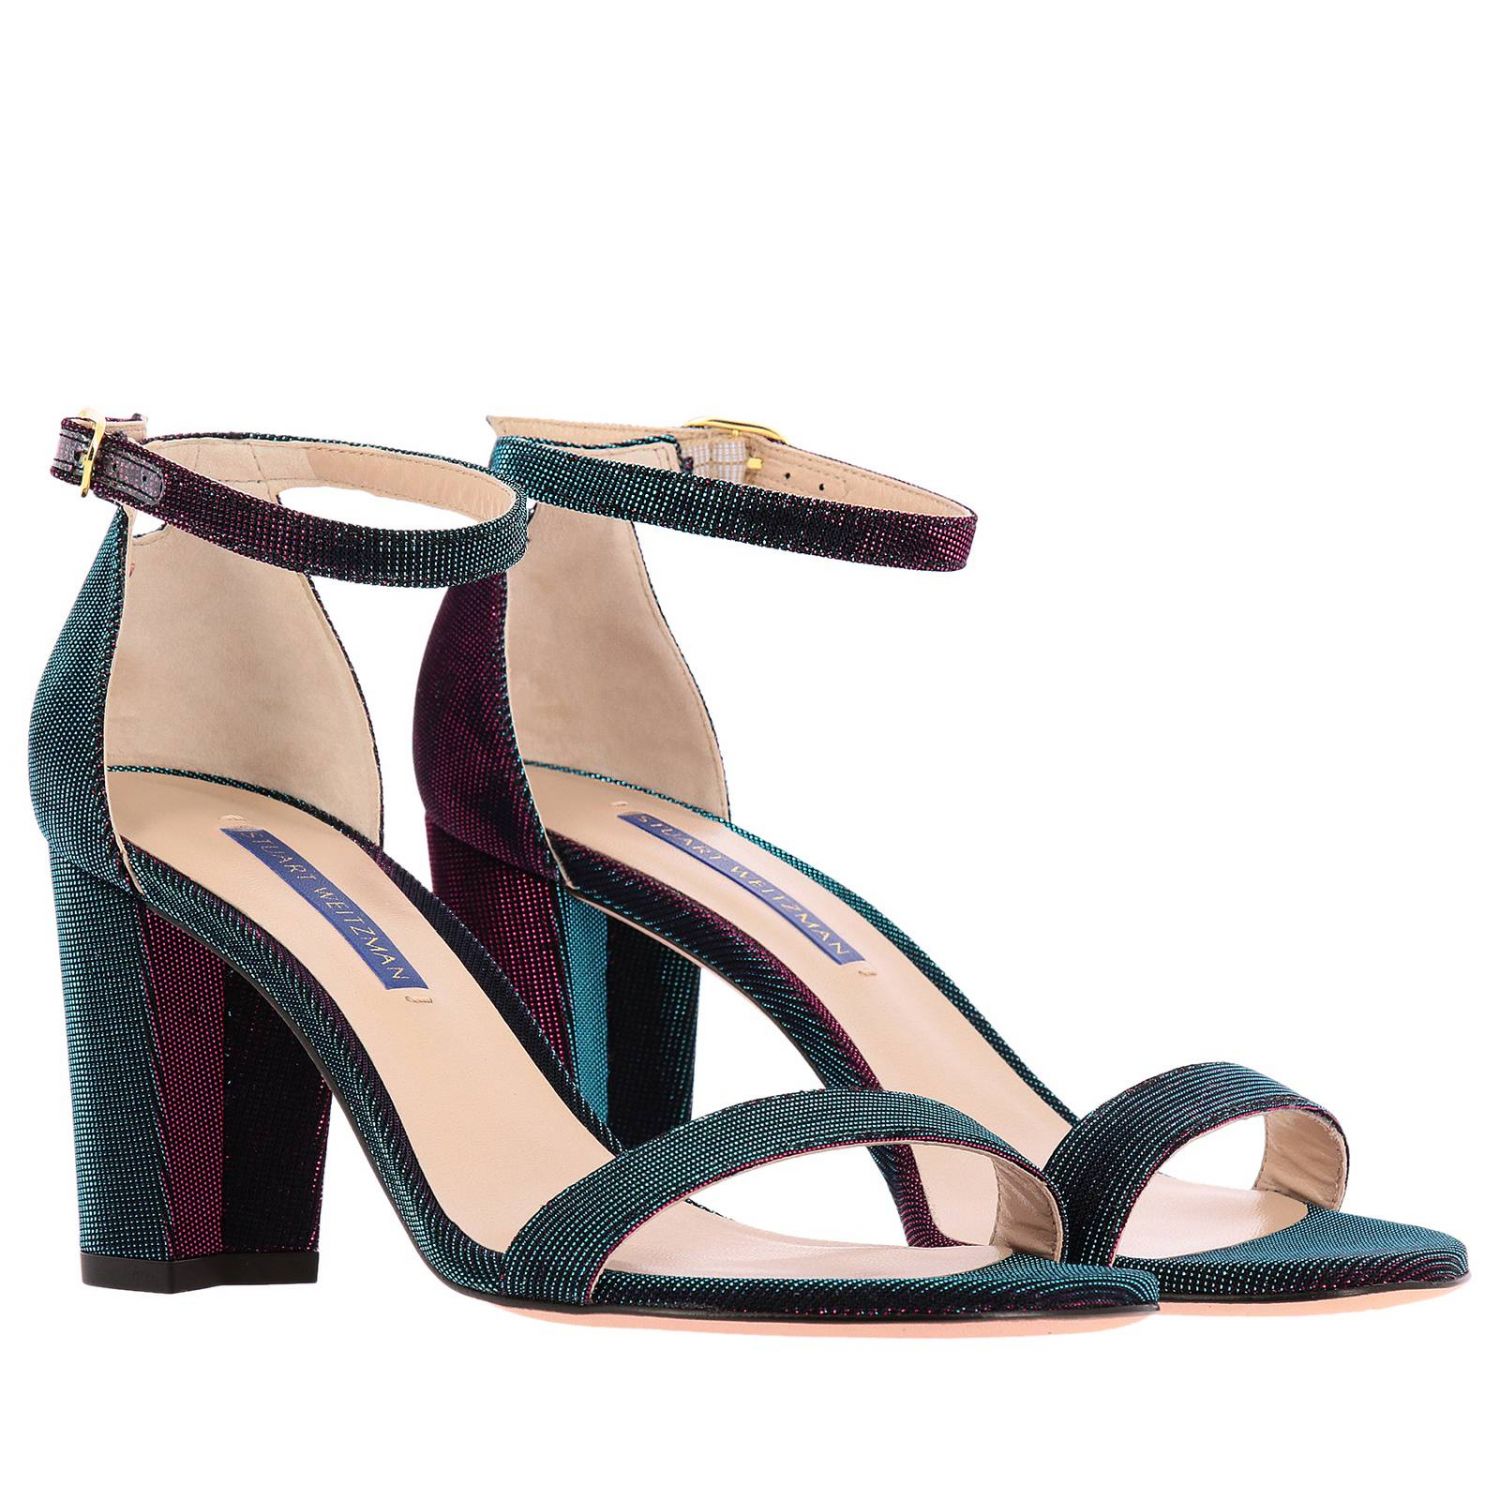 Stuart Weitzman Outlet: heeled sandals for woman - Multicolor | Stuart ...